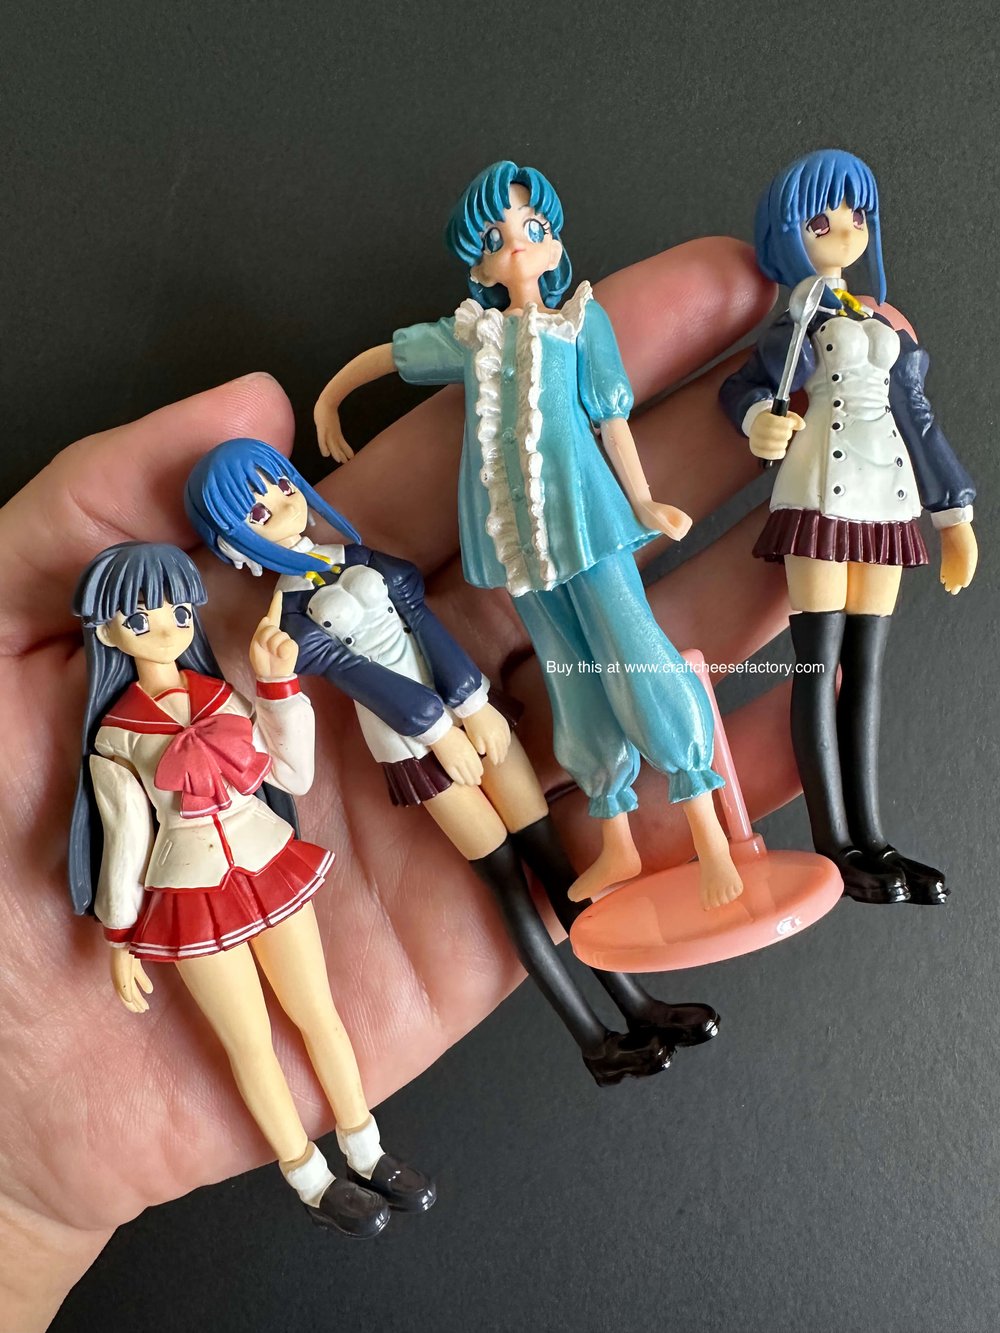 Vintage Japan anime manga schoolgirl maid miniature dolls figurines —